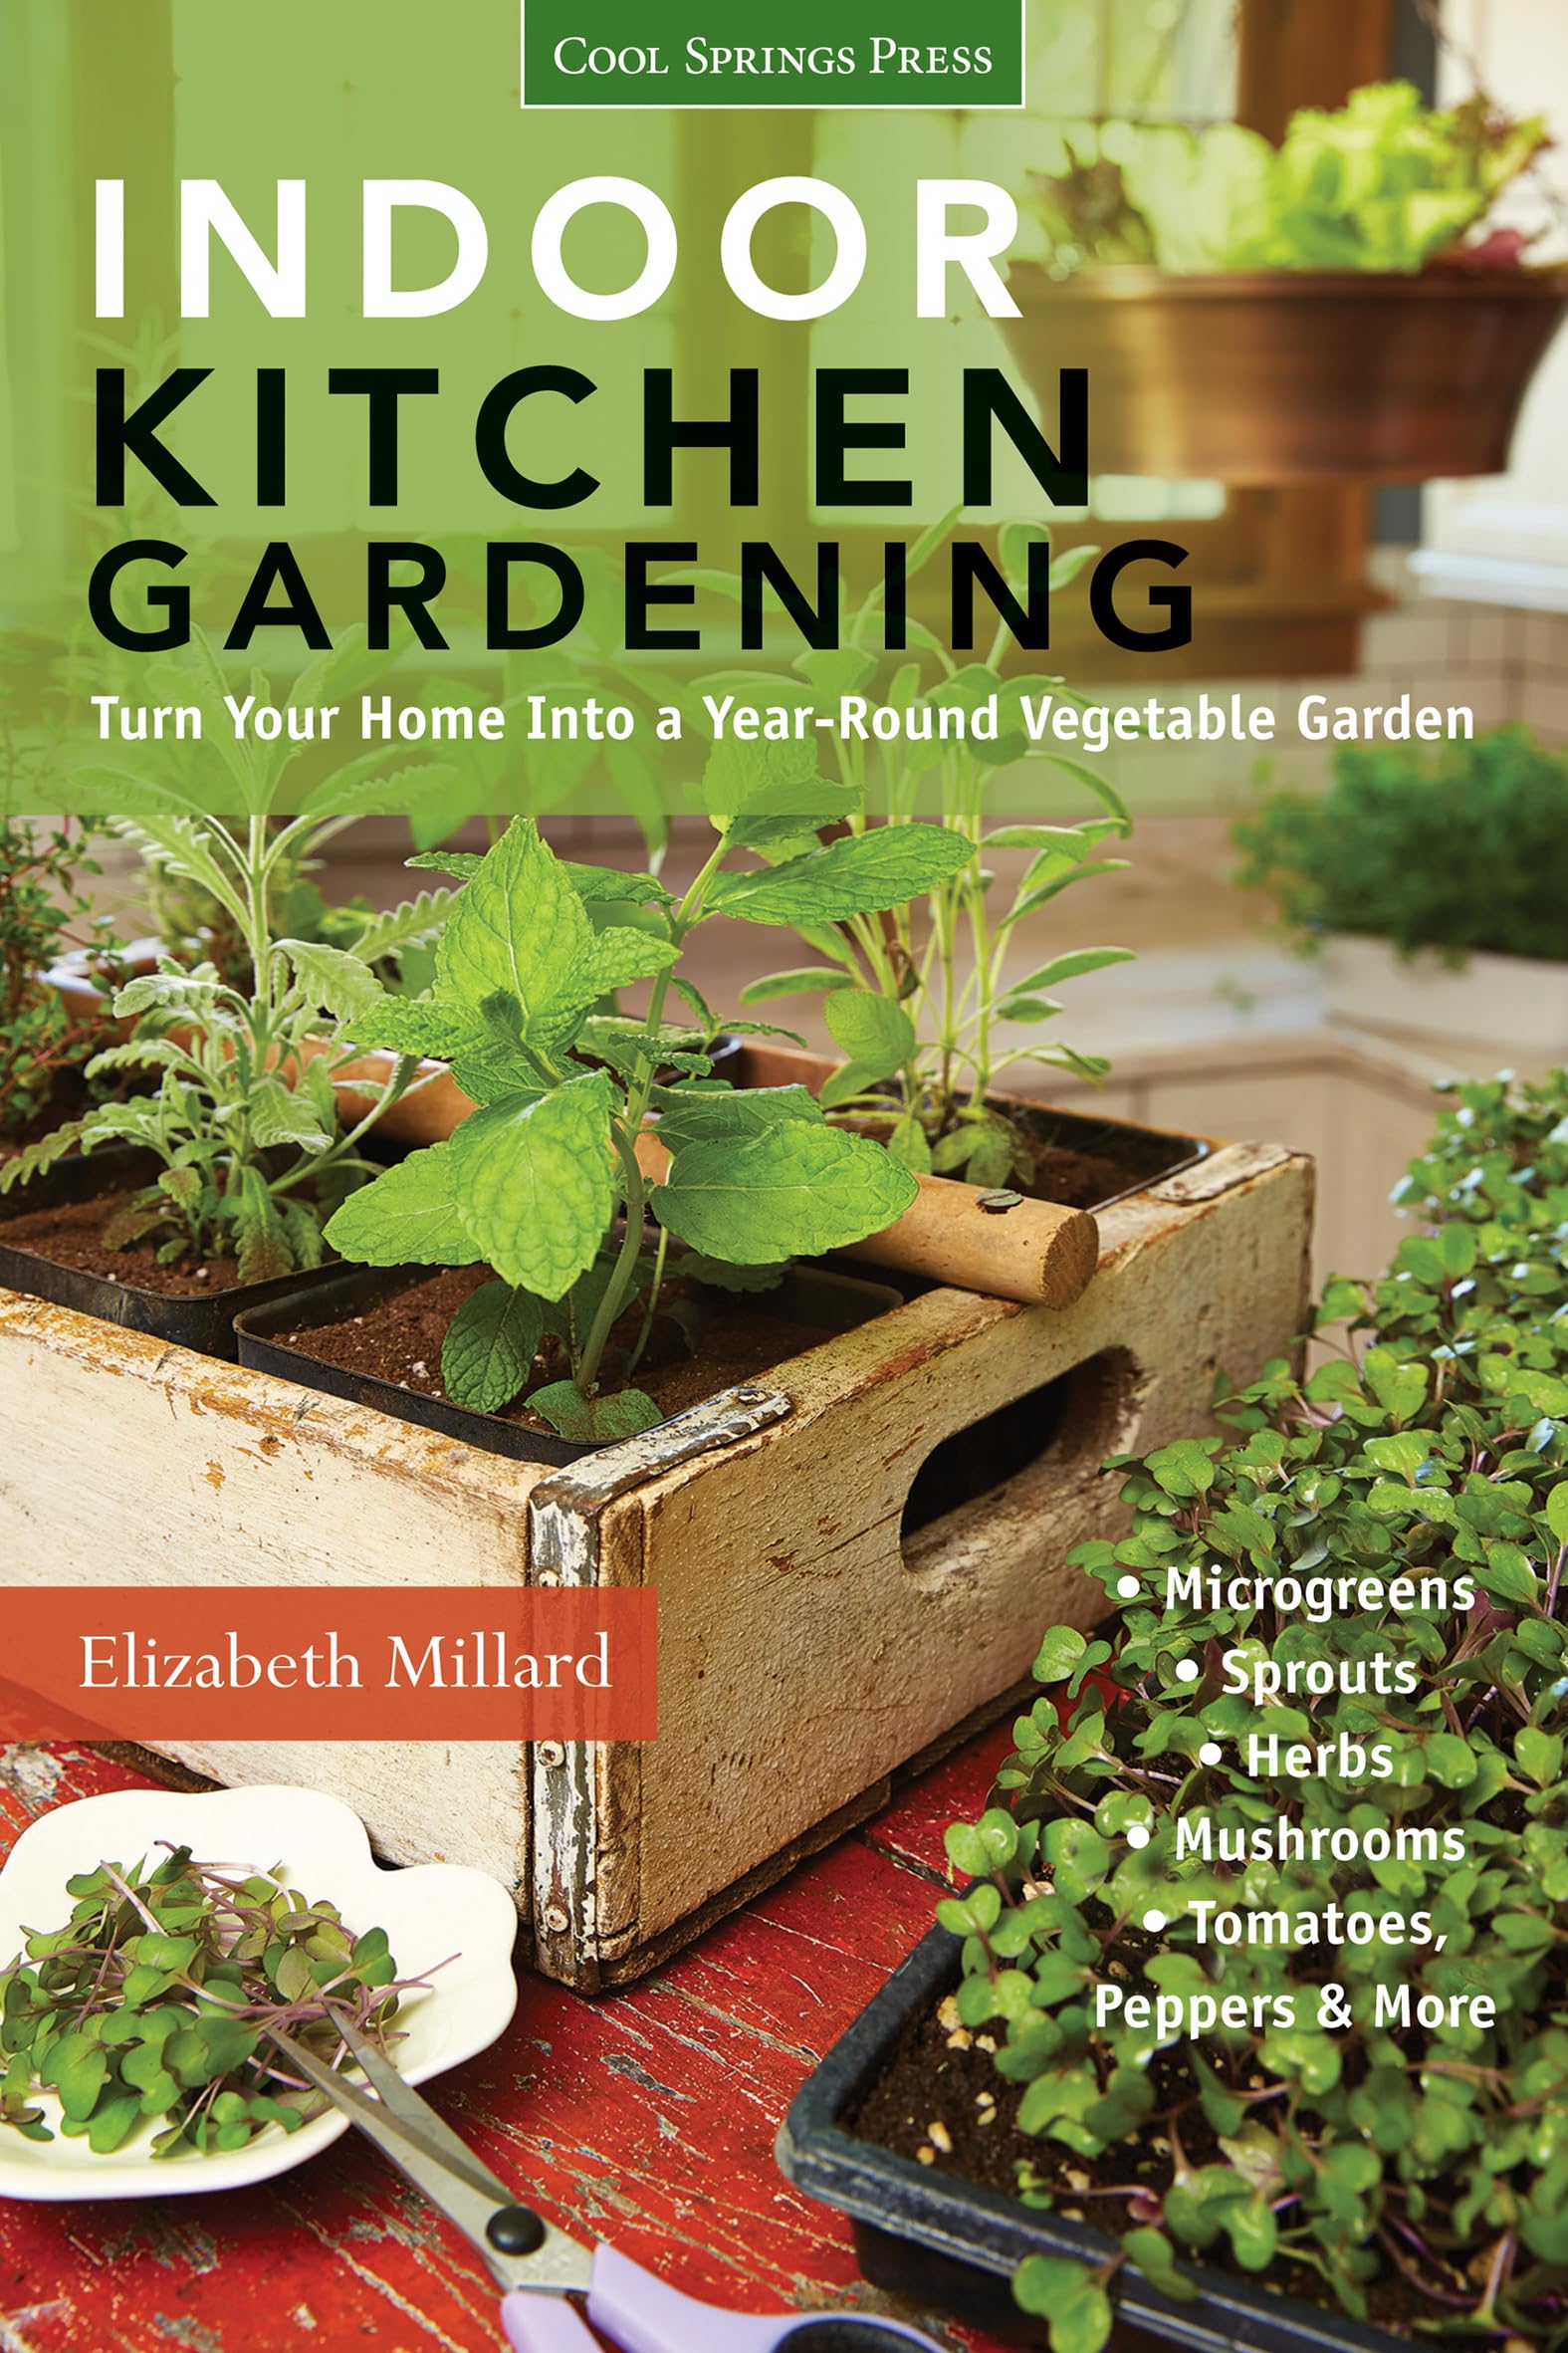 Indoor Kitchen Gardening: Turn Your Home Into a Year-Round Vegetable Garden by Elizabeth Millard (Kindle eBook) $3